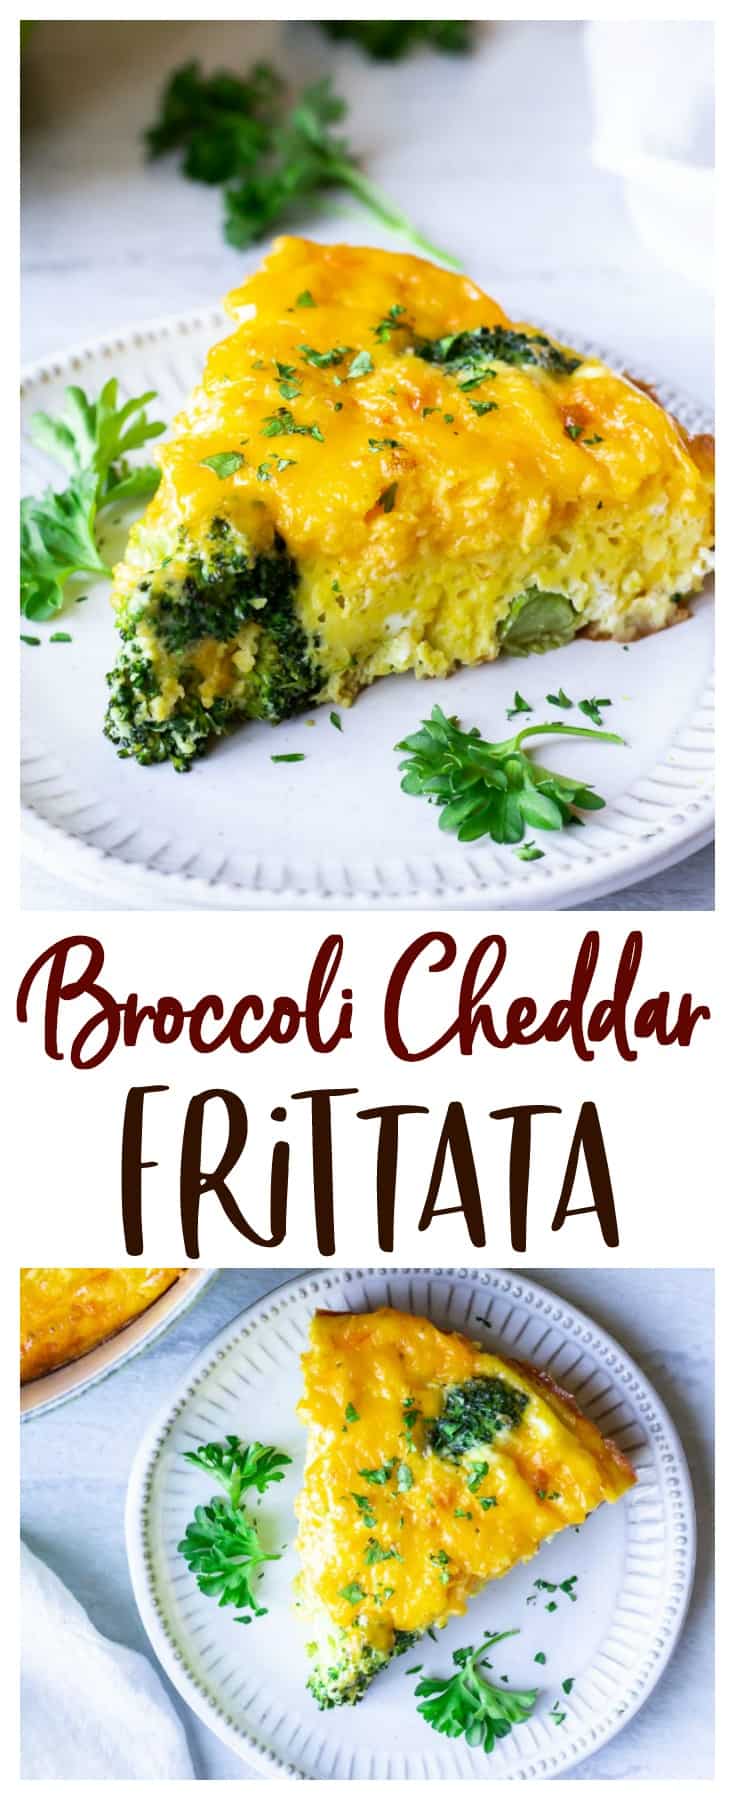 Easy Broccoli Cheddar Frittata Recipe - Delicious Little Bites